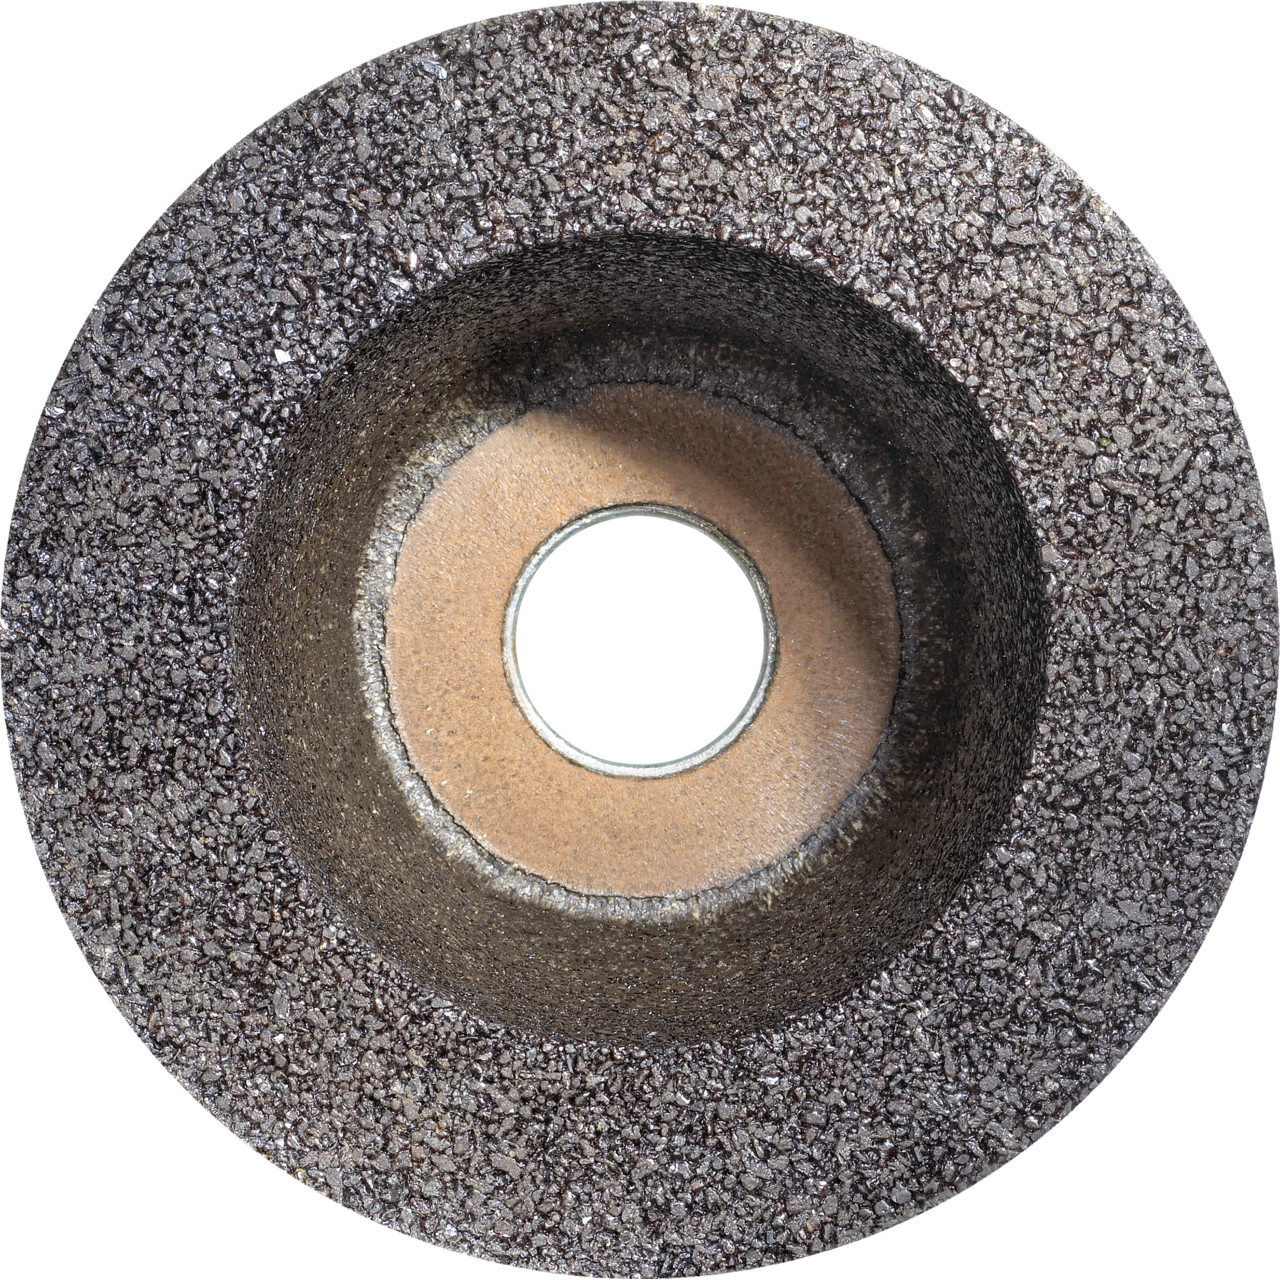 Tazza in resina sintetica TYROLIT D/JxDxH 110/90x55x22,23 Per acciaio, forma: ruota a tazza 11BT, Art. 311096